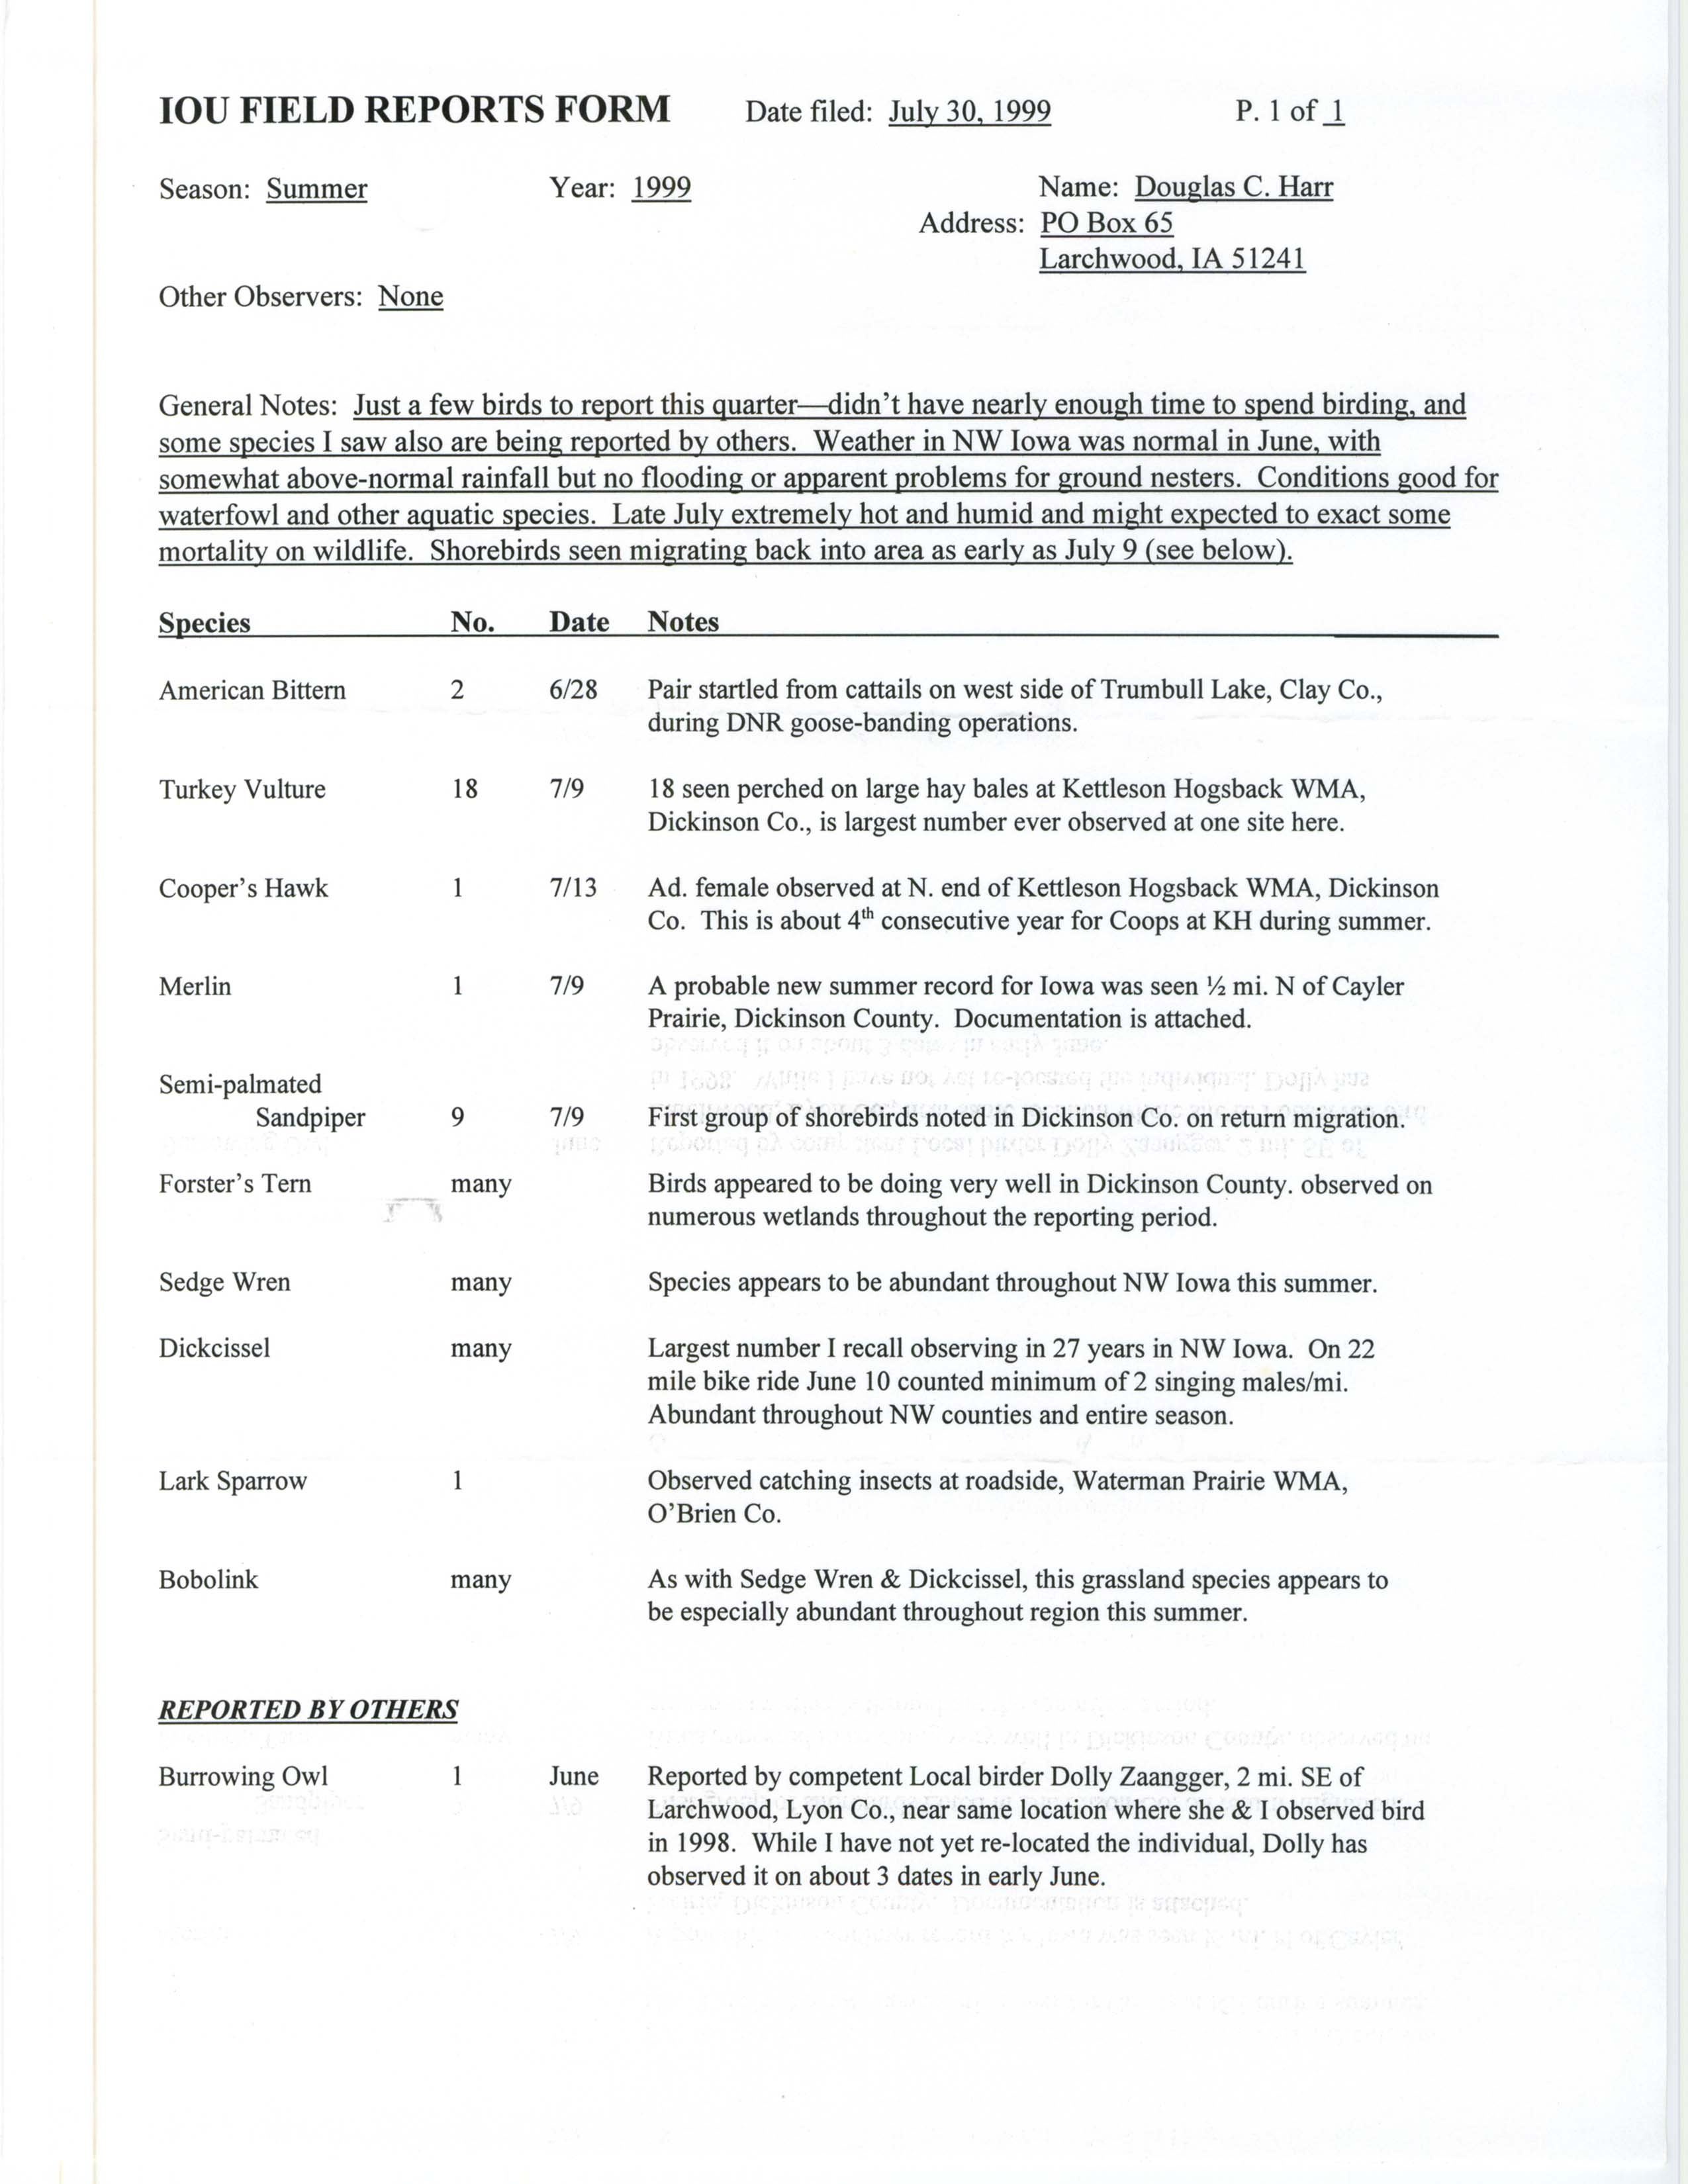 IOU field reports form, Douglas Harr, July 30, 1999